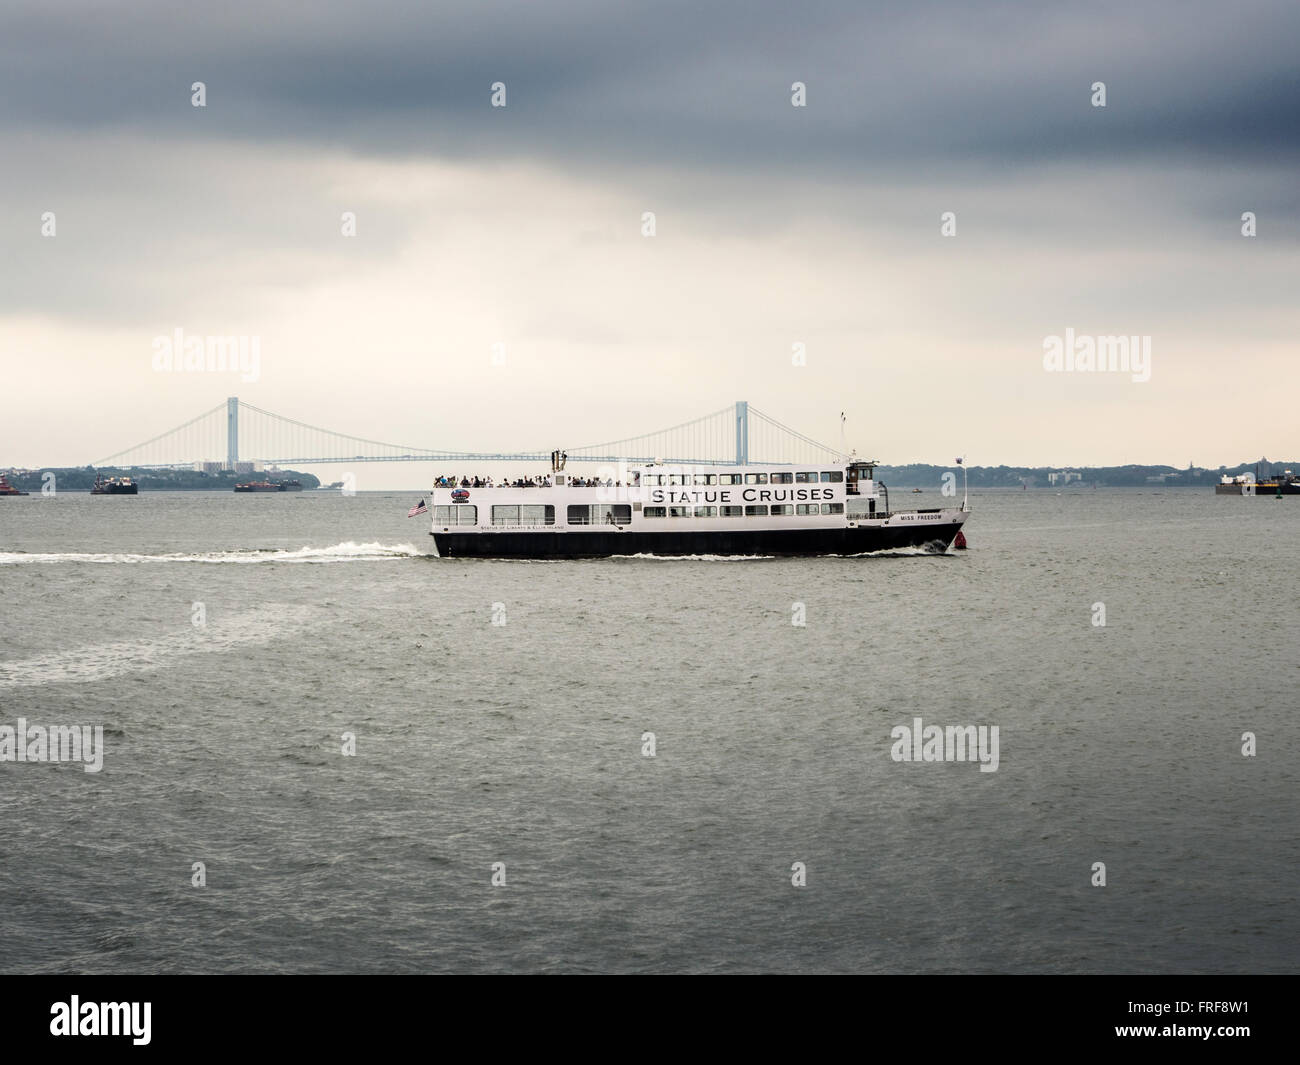 Statue Cruises Touristenboot mit Verrazano-Narrows-Brücke im Hintergrund, New York, USA. Stockfoto